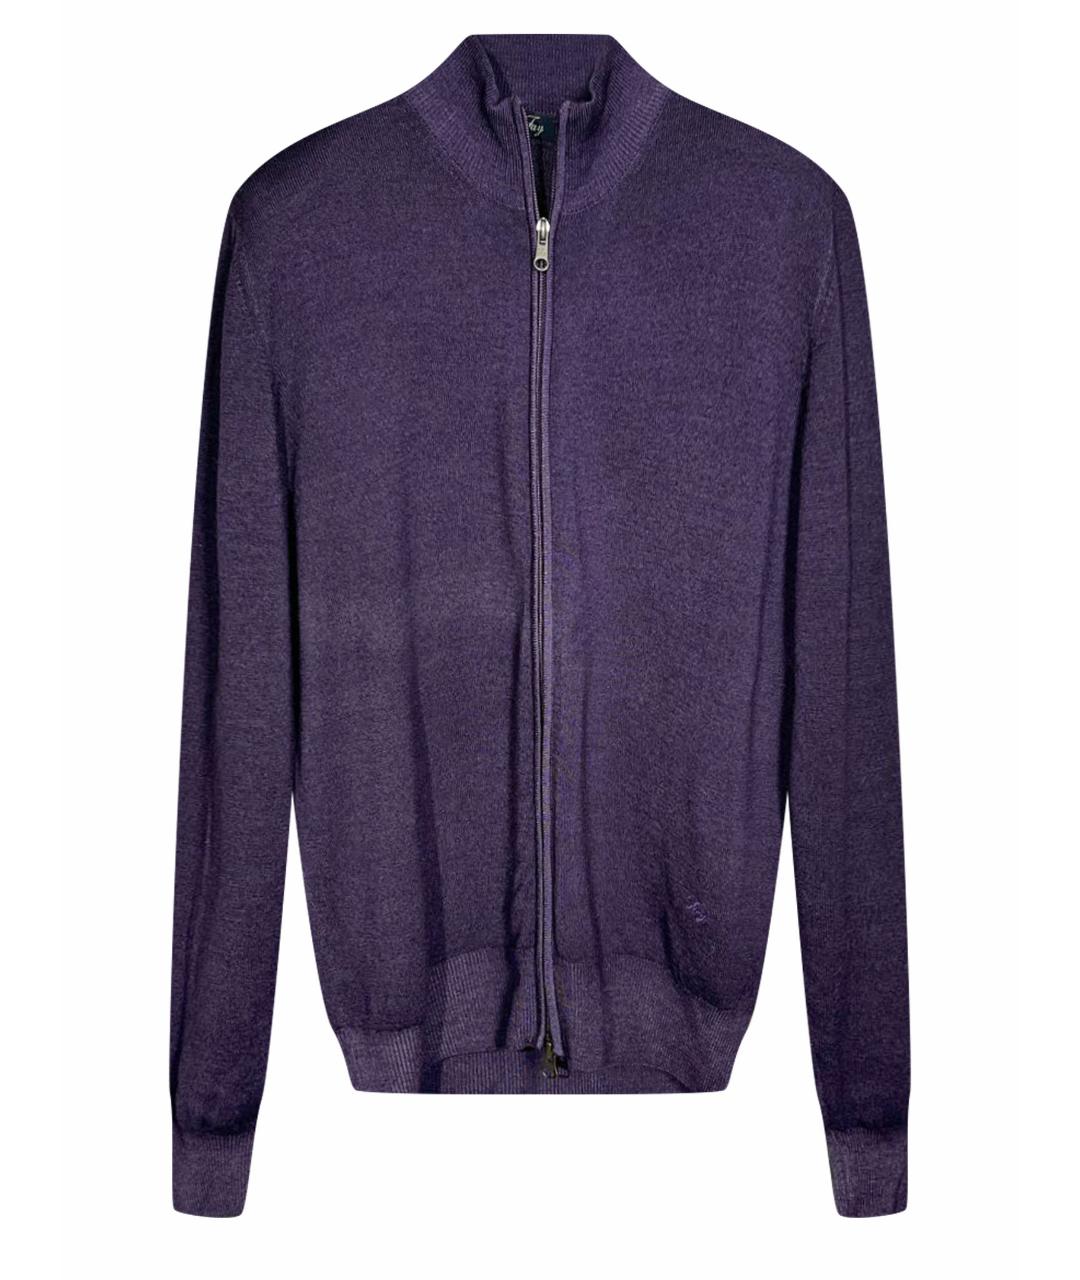 FAY Фиолетовый джемпер / свитер, фото 1